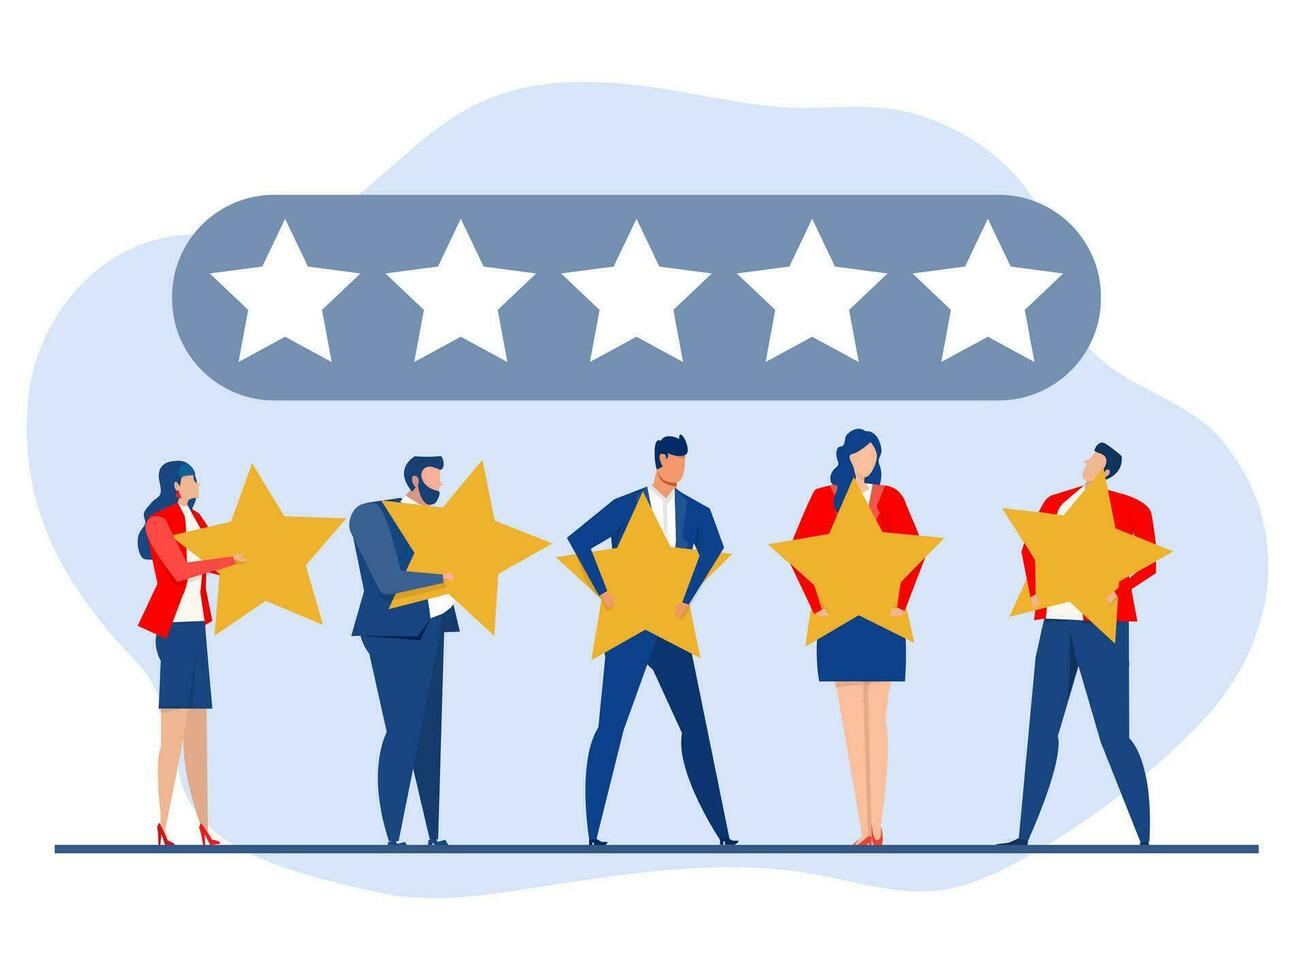 cinq étoile évaluation positif commentaires, personnes en portant la revue étoiles les clients évaluation client retour d'information la satisfaction niveau notion,soutien produit ou un service vecteur illustration